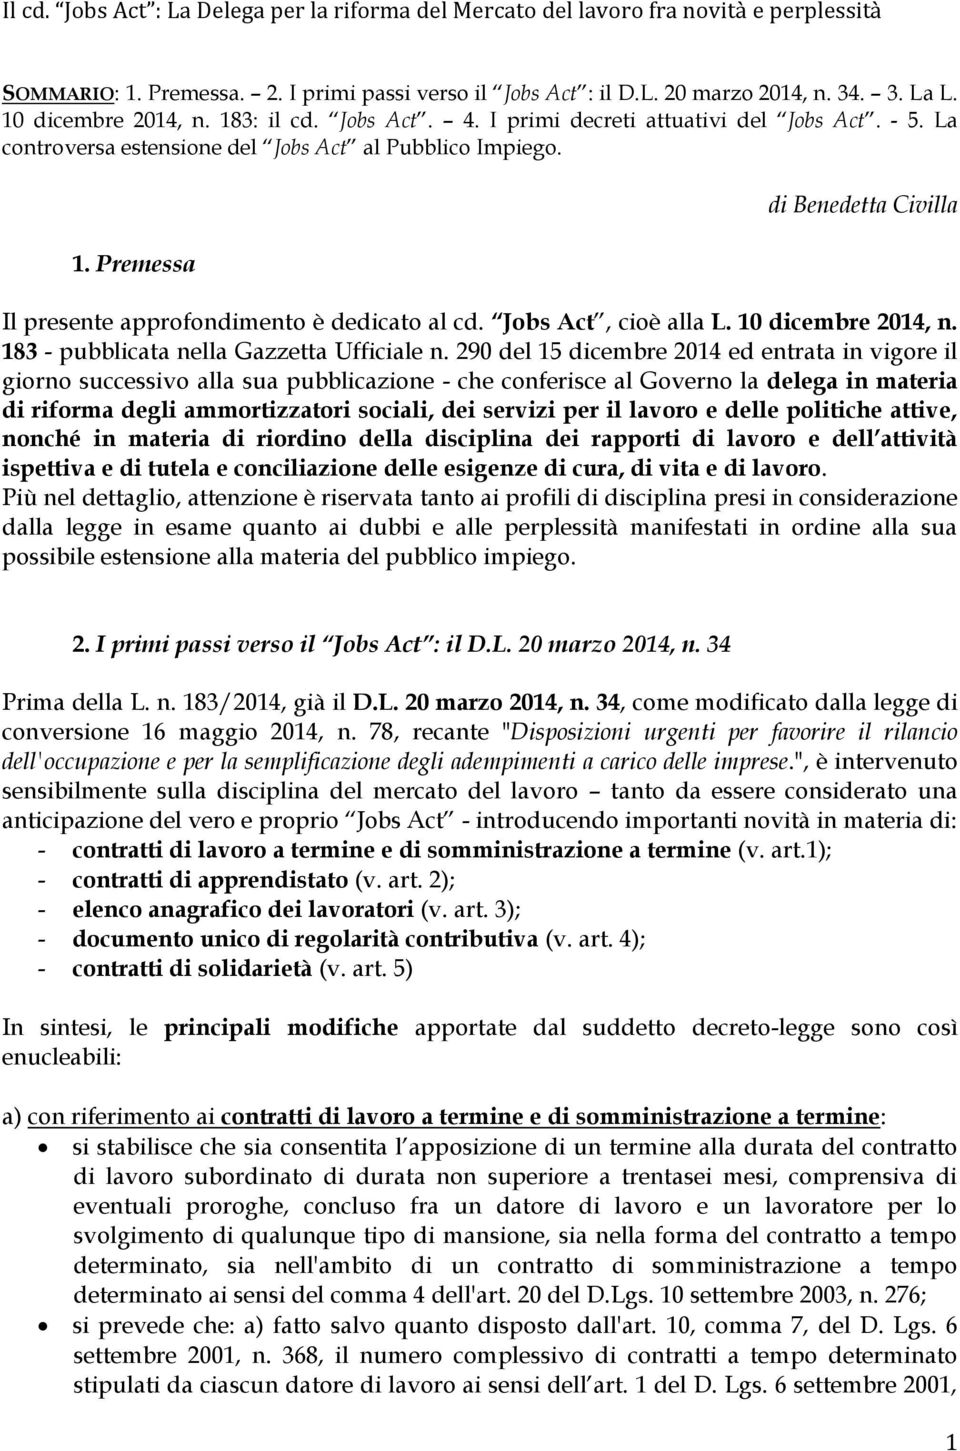 Jobs Act, cioè alla L. 10 dicembre 2014, n. 183 - pubblicata nella Gazzetta Ufficiale n.